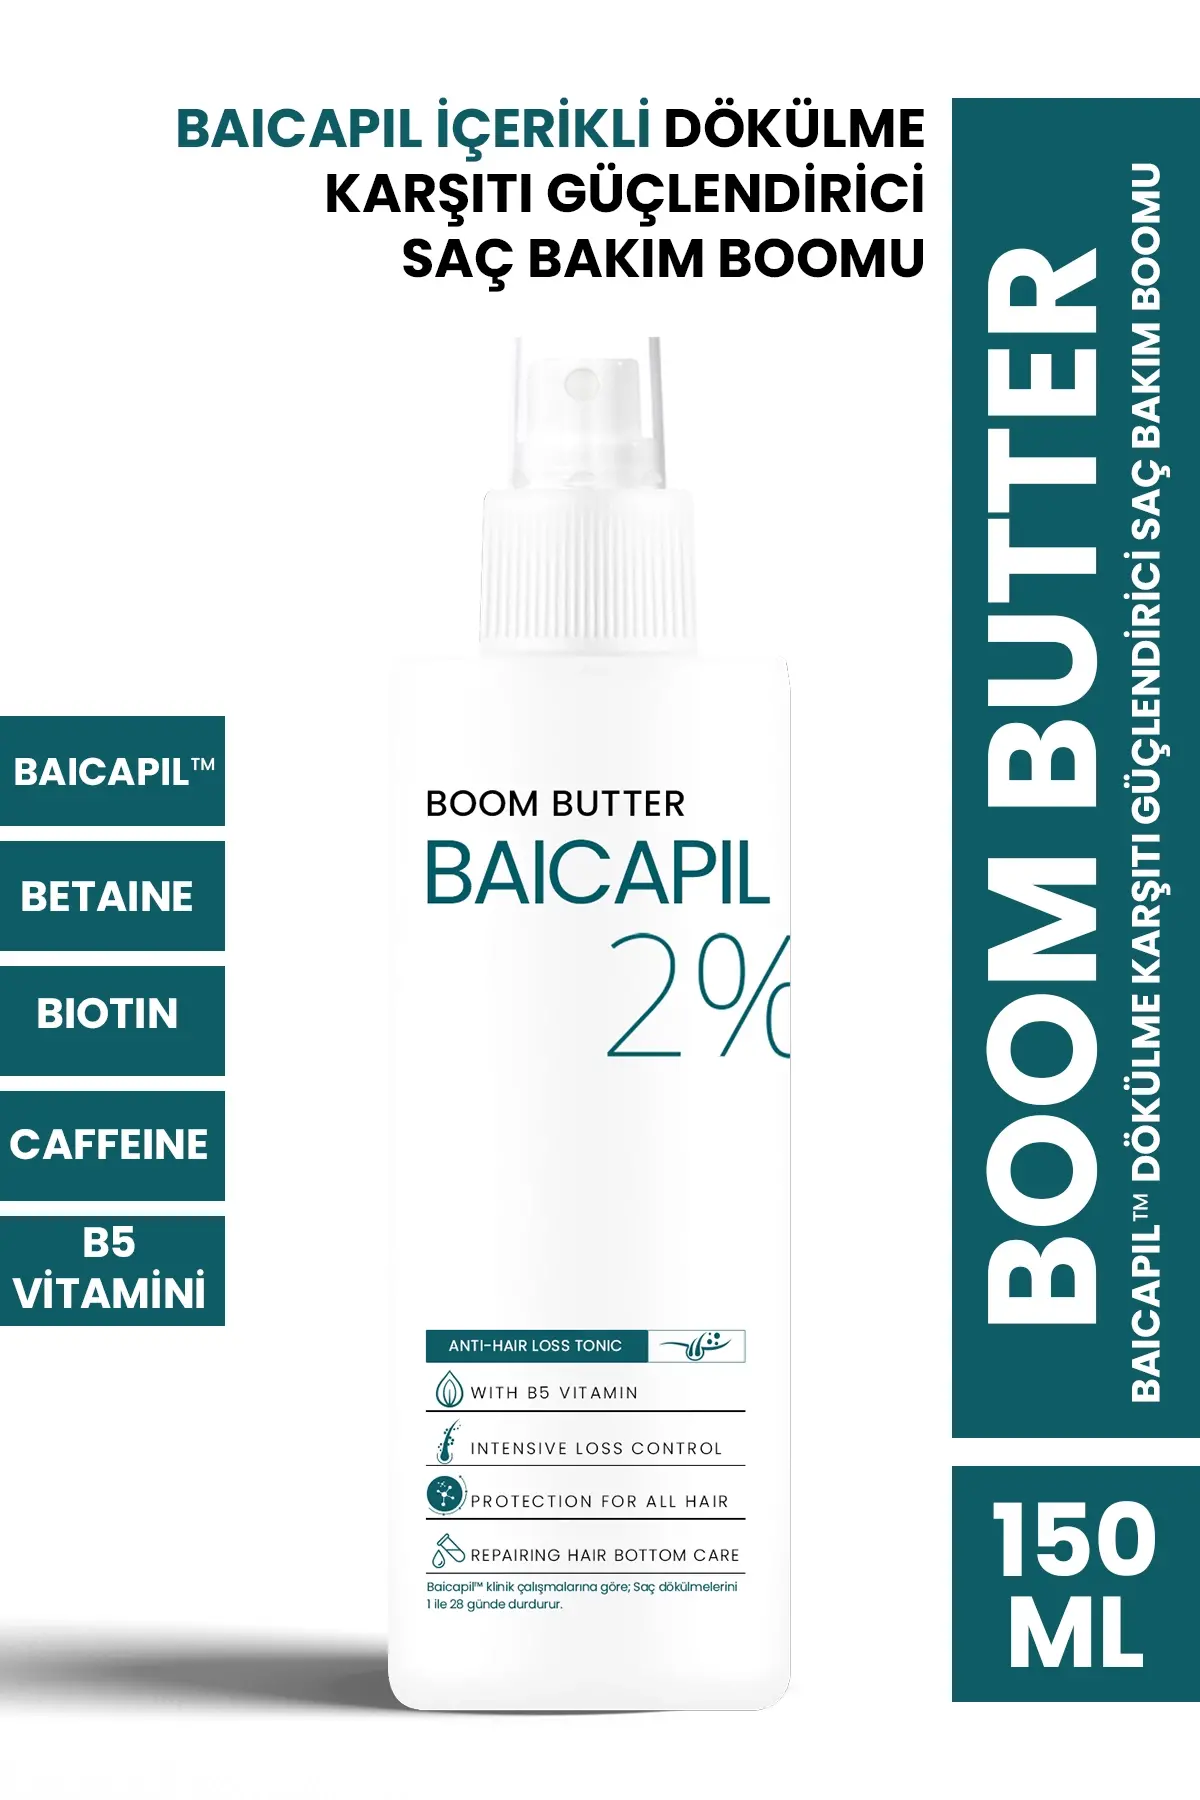 PROCSIN Anti-Hair Loss & Hair Strengthening Hair Care Boom with Baicapil 150 ML - 1